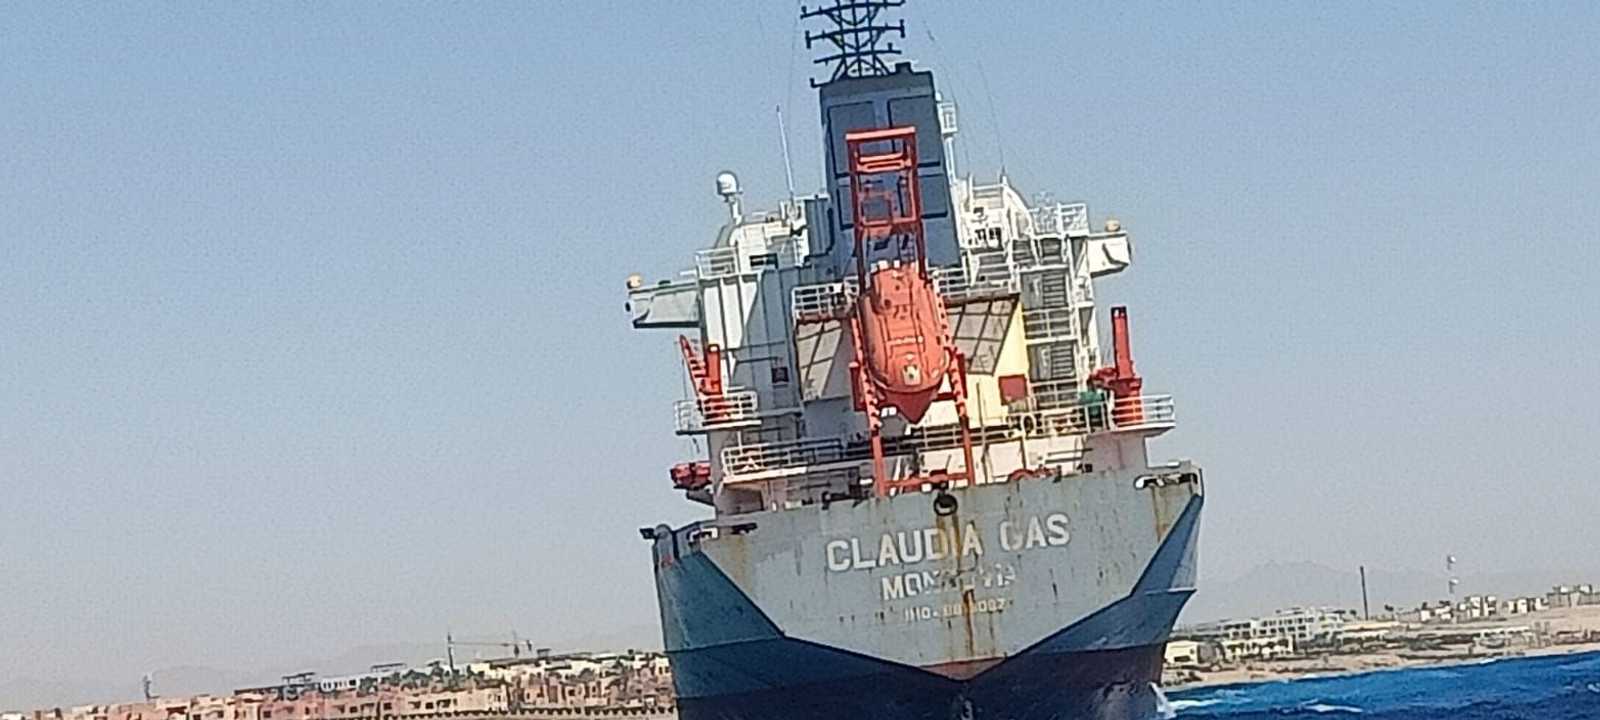 السفينة "كلوديا جاس" التي جنحت في مدخل خليج العقبة